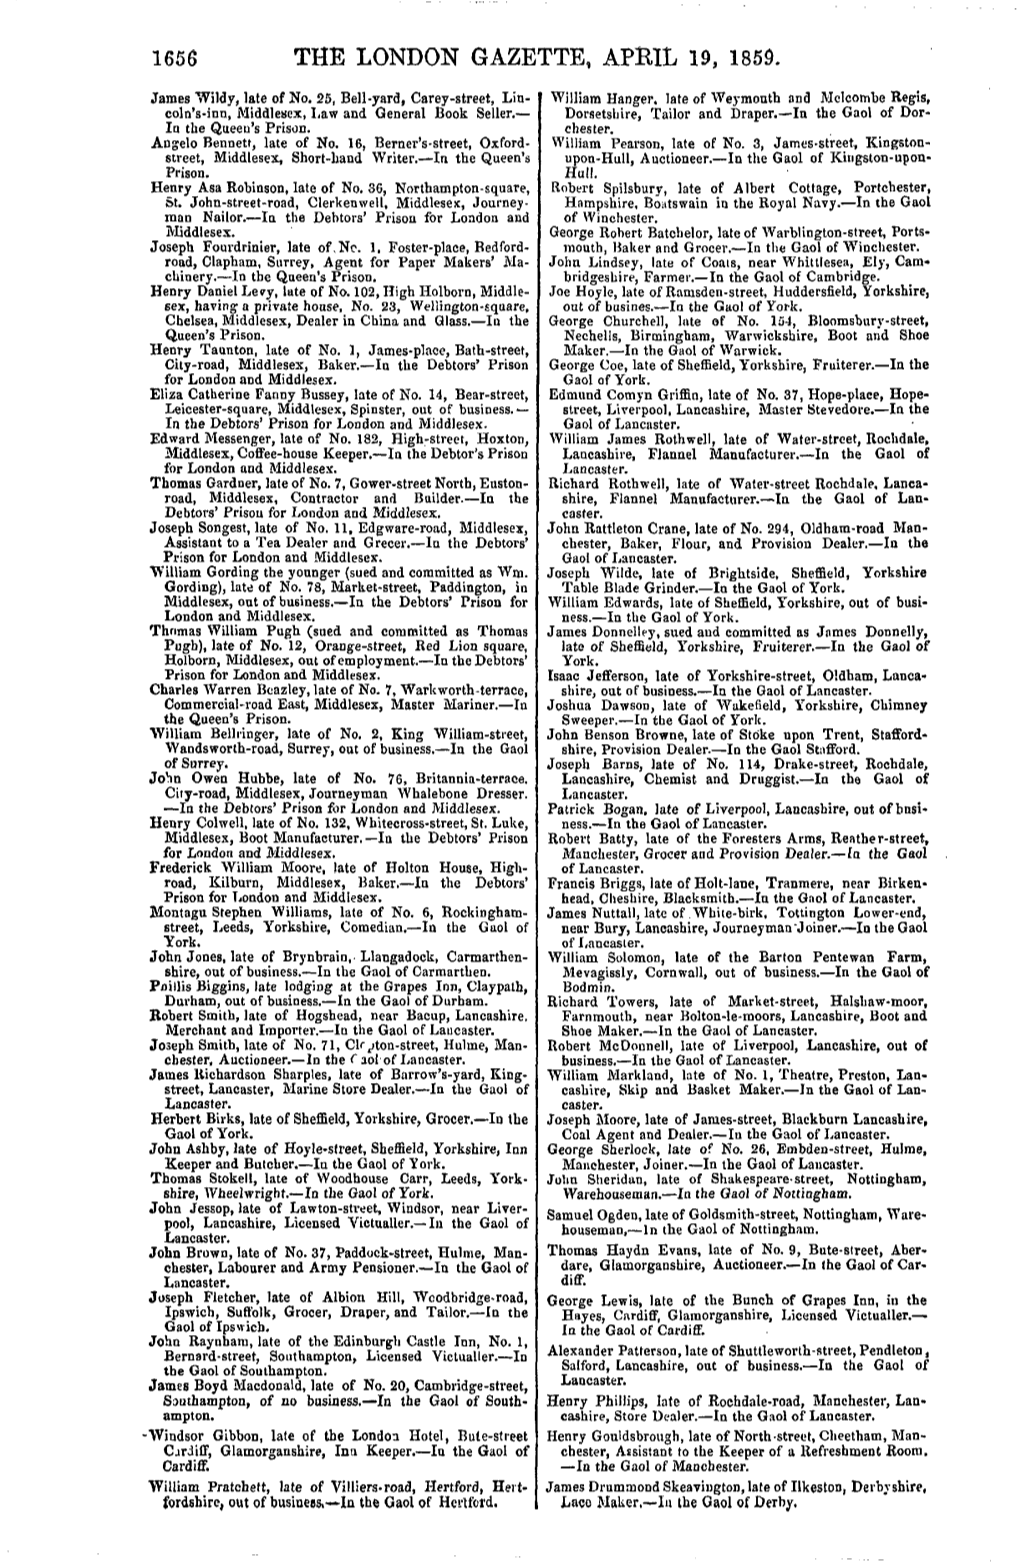 The London Gazette, April 19, 1859